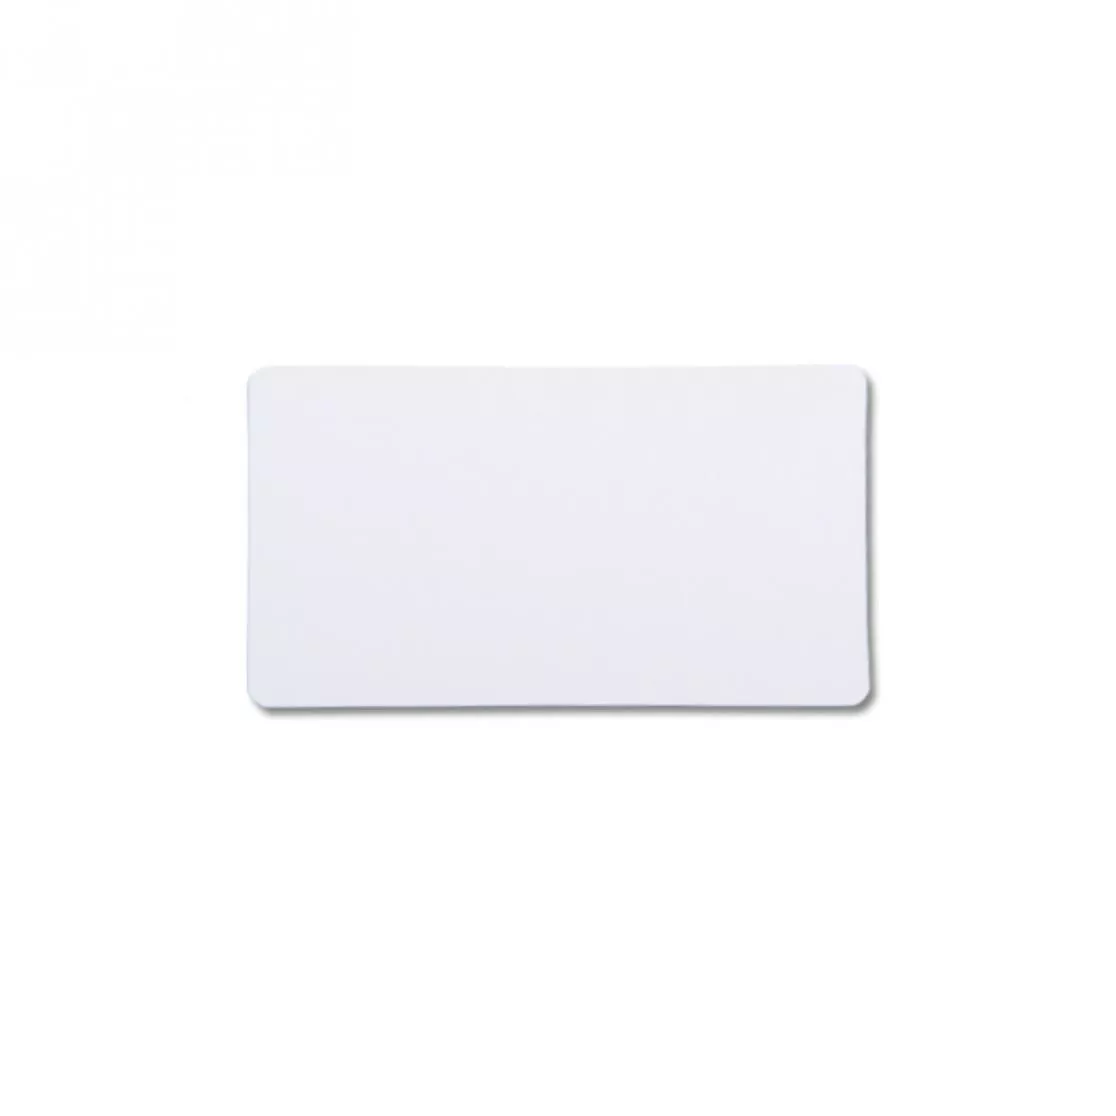 plastic card white finish oversize